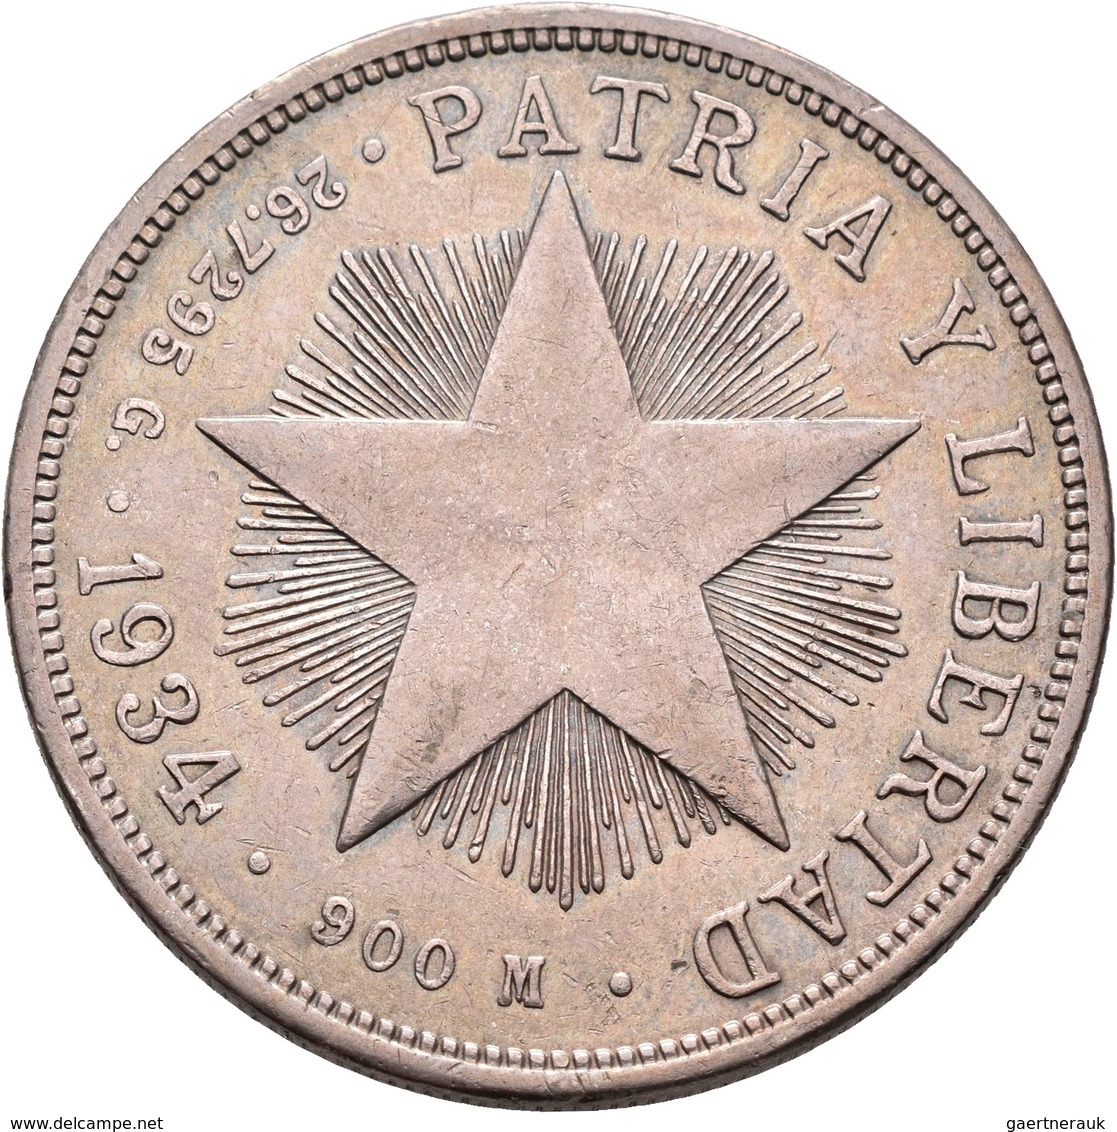 Kuba: Lot 4 Stück; Peso 1915, 1934, 1934, 1953, sehr schön-vorzüglich, vorzüglich, Stempelglanz.